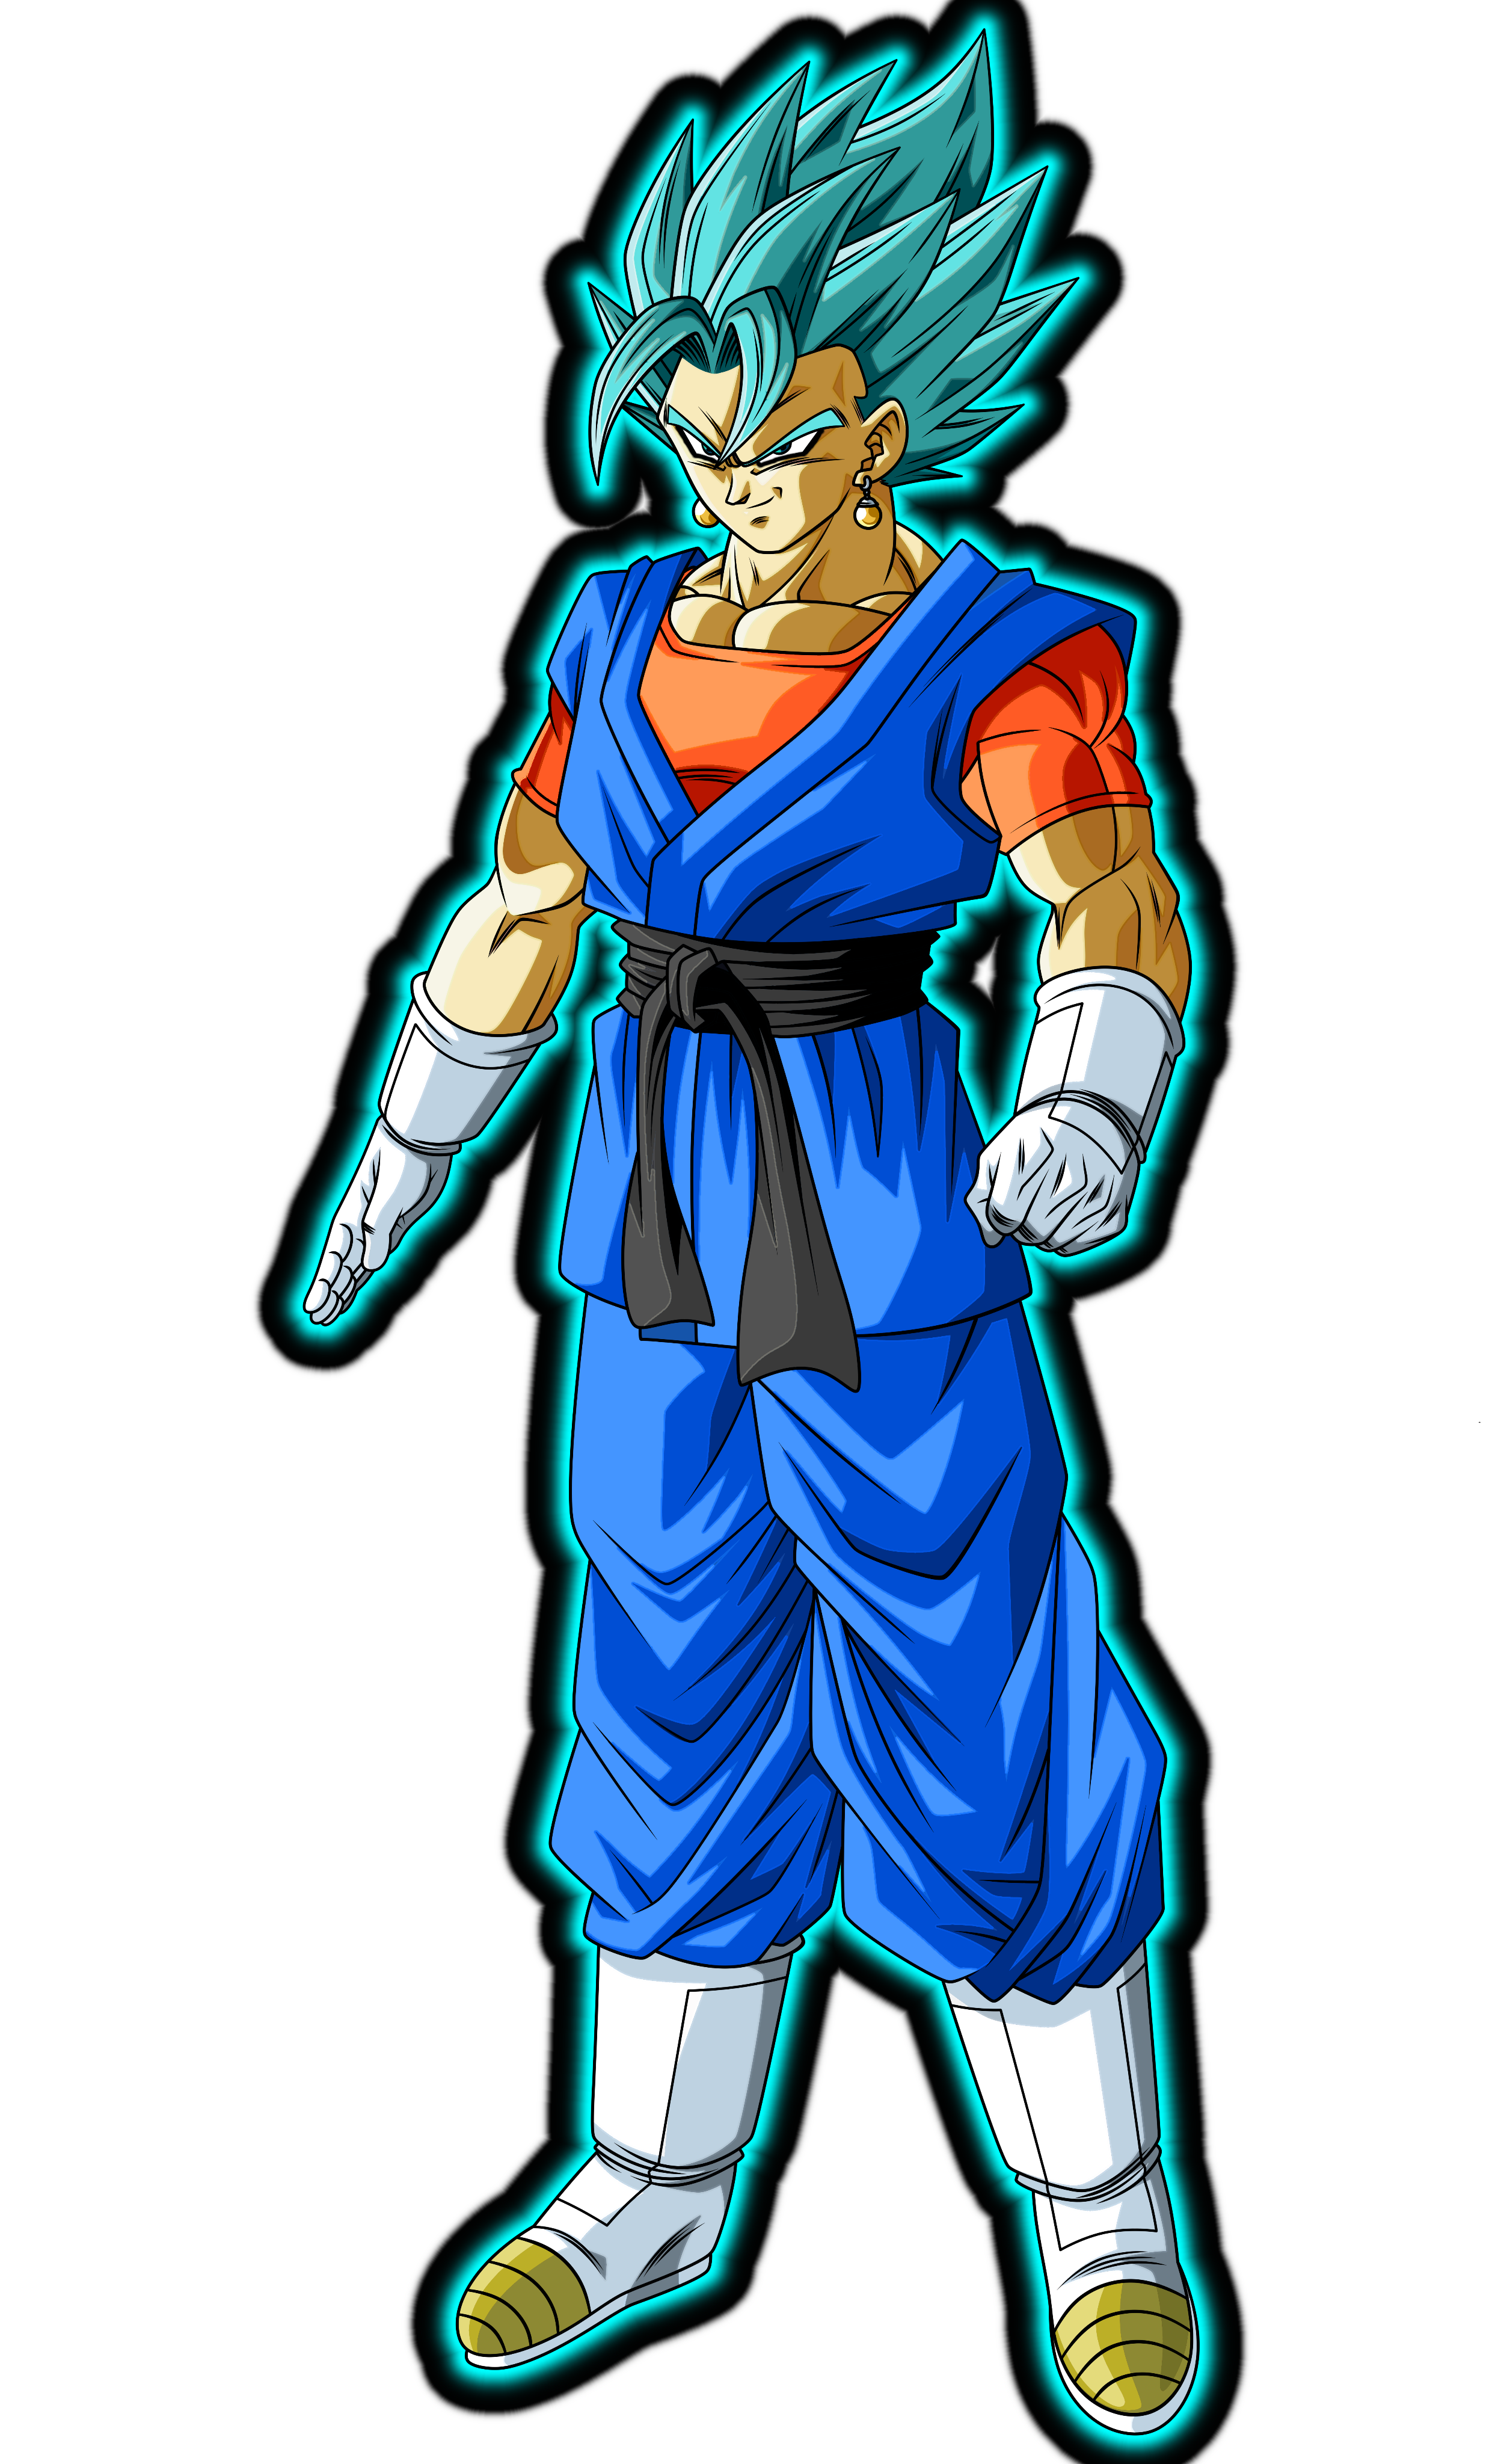 Goku SSJ BLUE 2 render 2 by xchs on DeviantArt